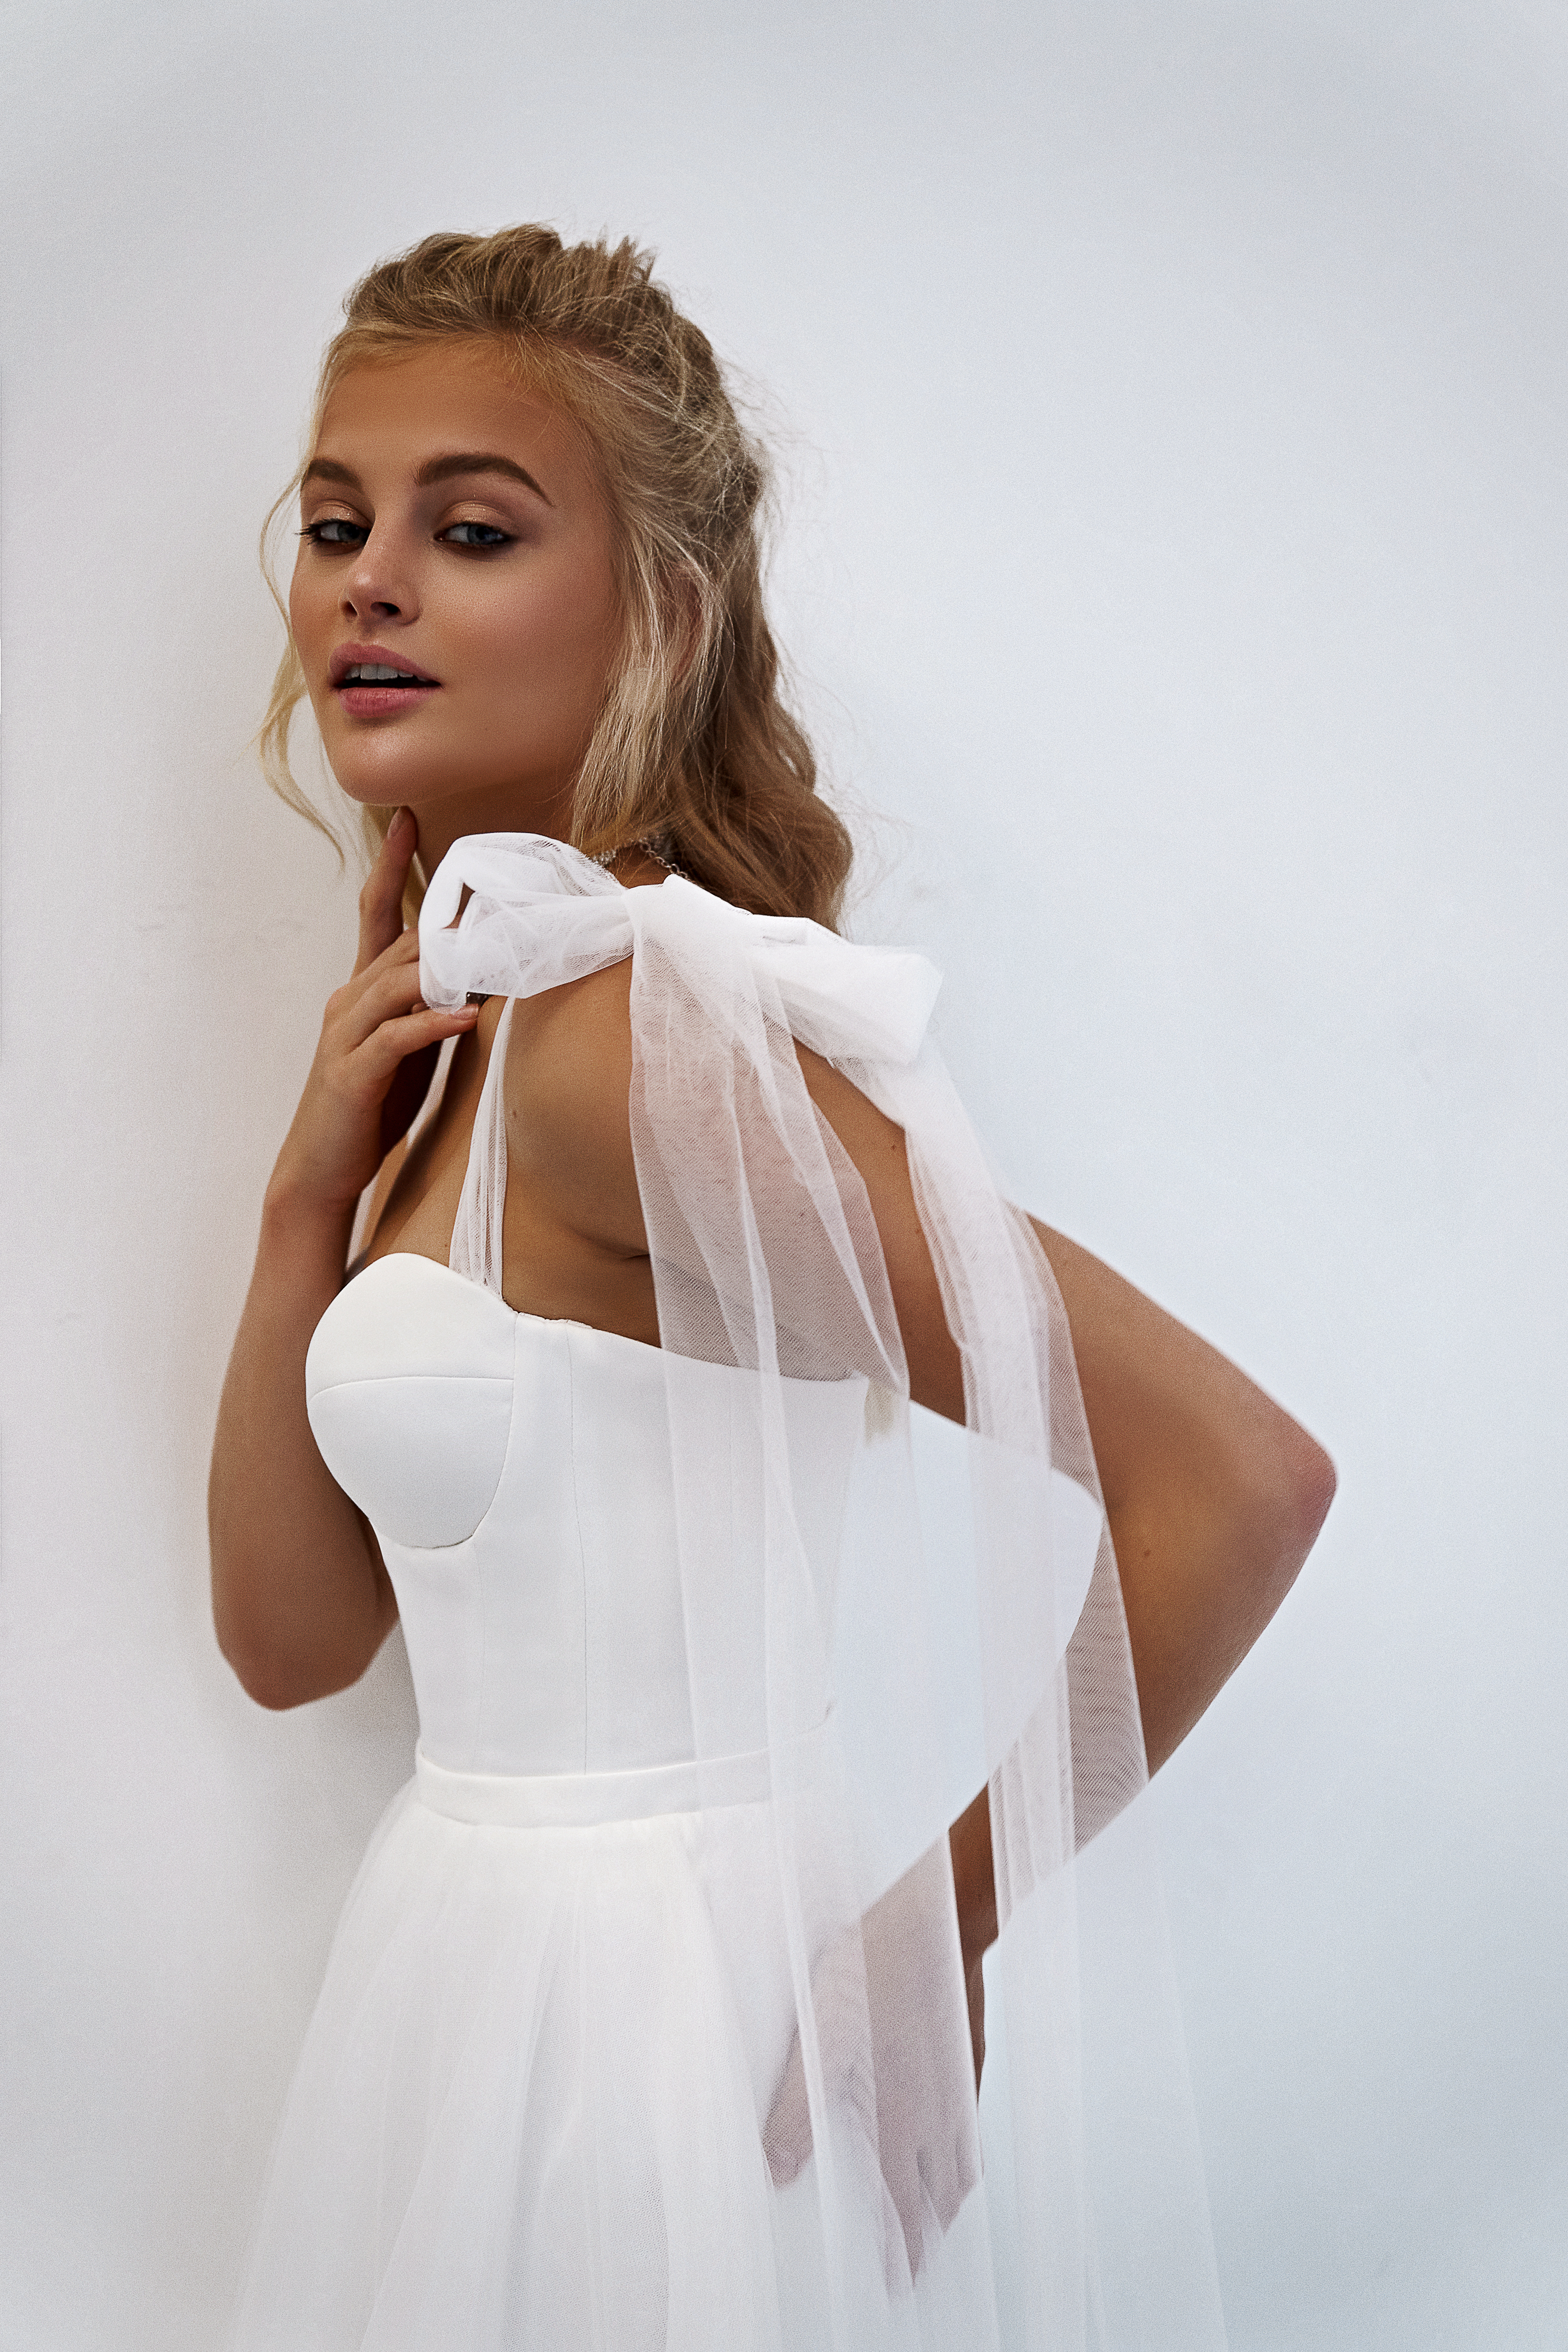 Свадебное платье «Олин» Марта — купить в Казани платье Олин из коллекции 2021 года